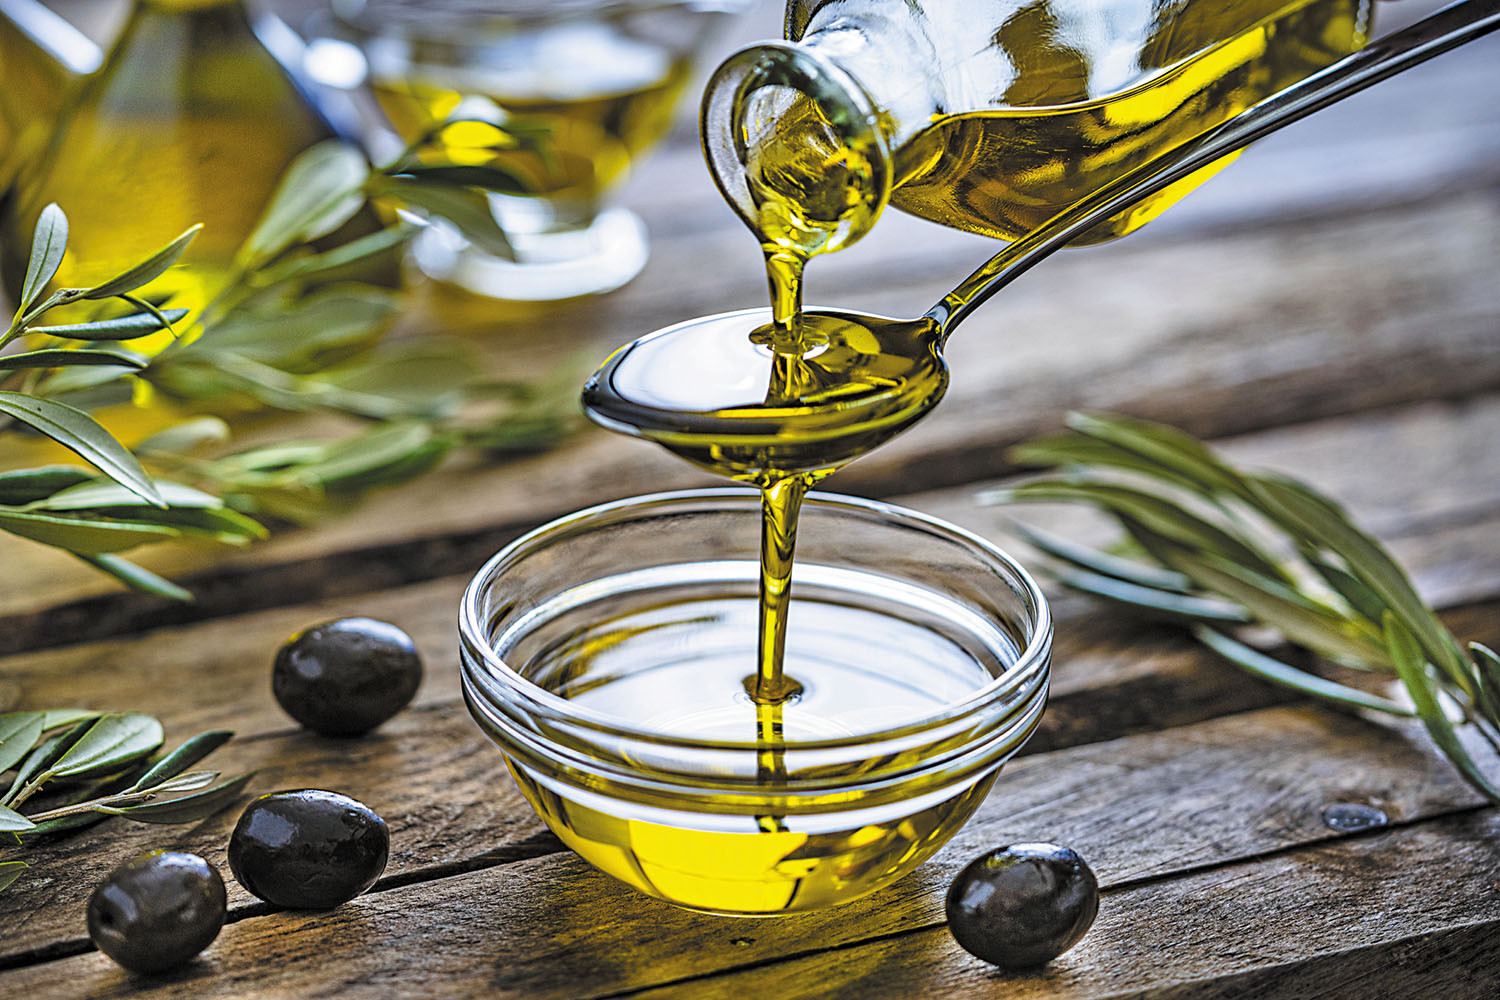 Folosiți uleiul de măsline de fiecare dată când puteți, ca înlocuitor al grăsimilor saturate. Studiu